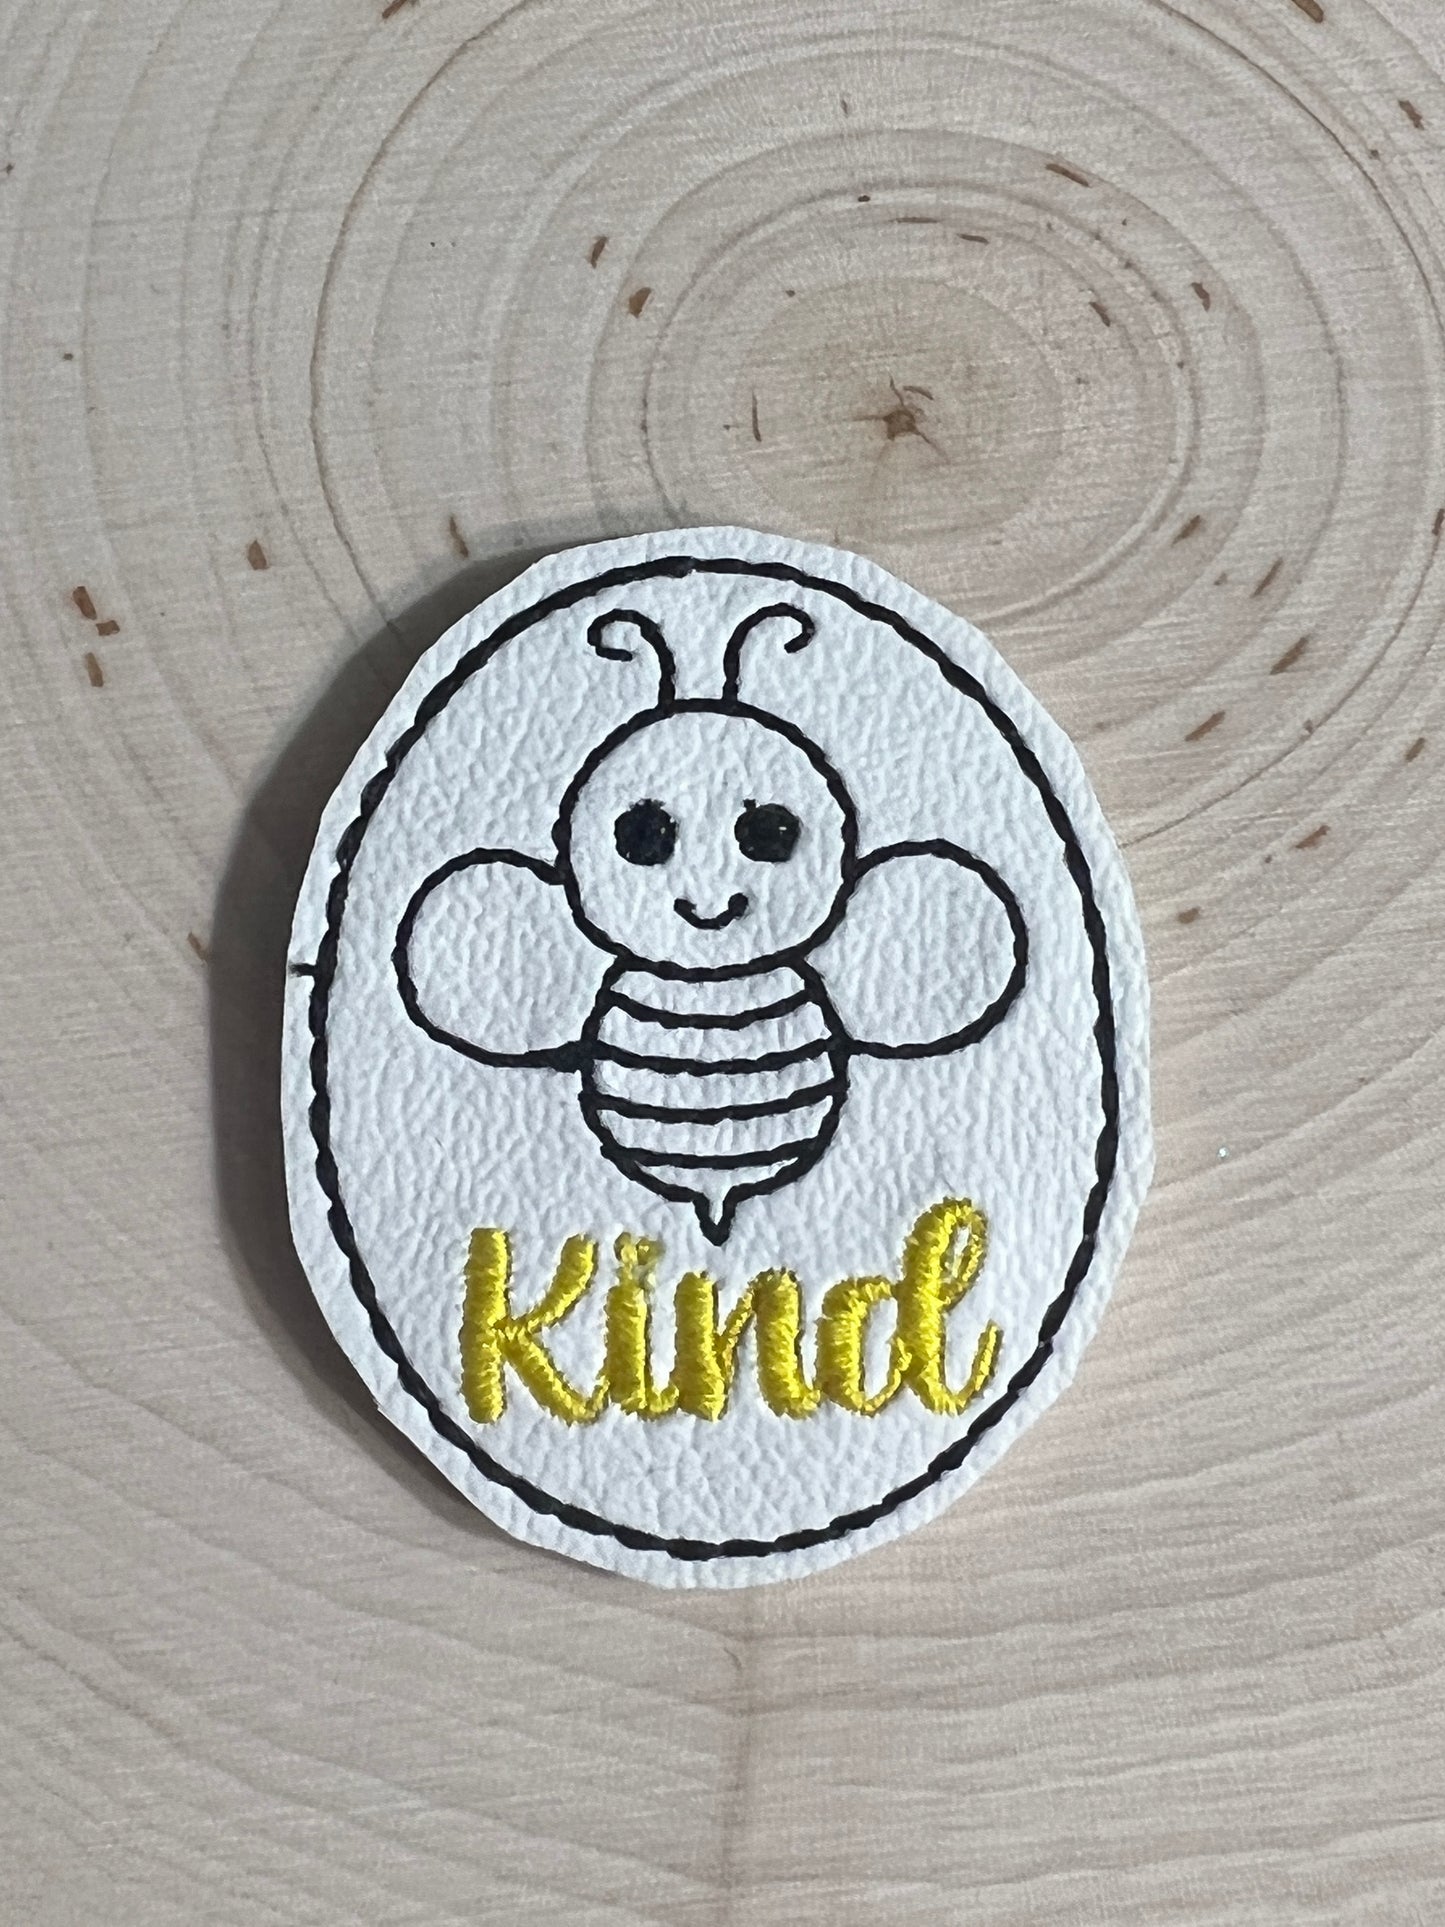 Kind bee